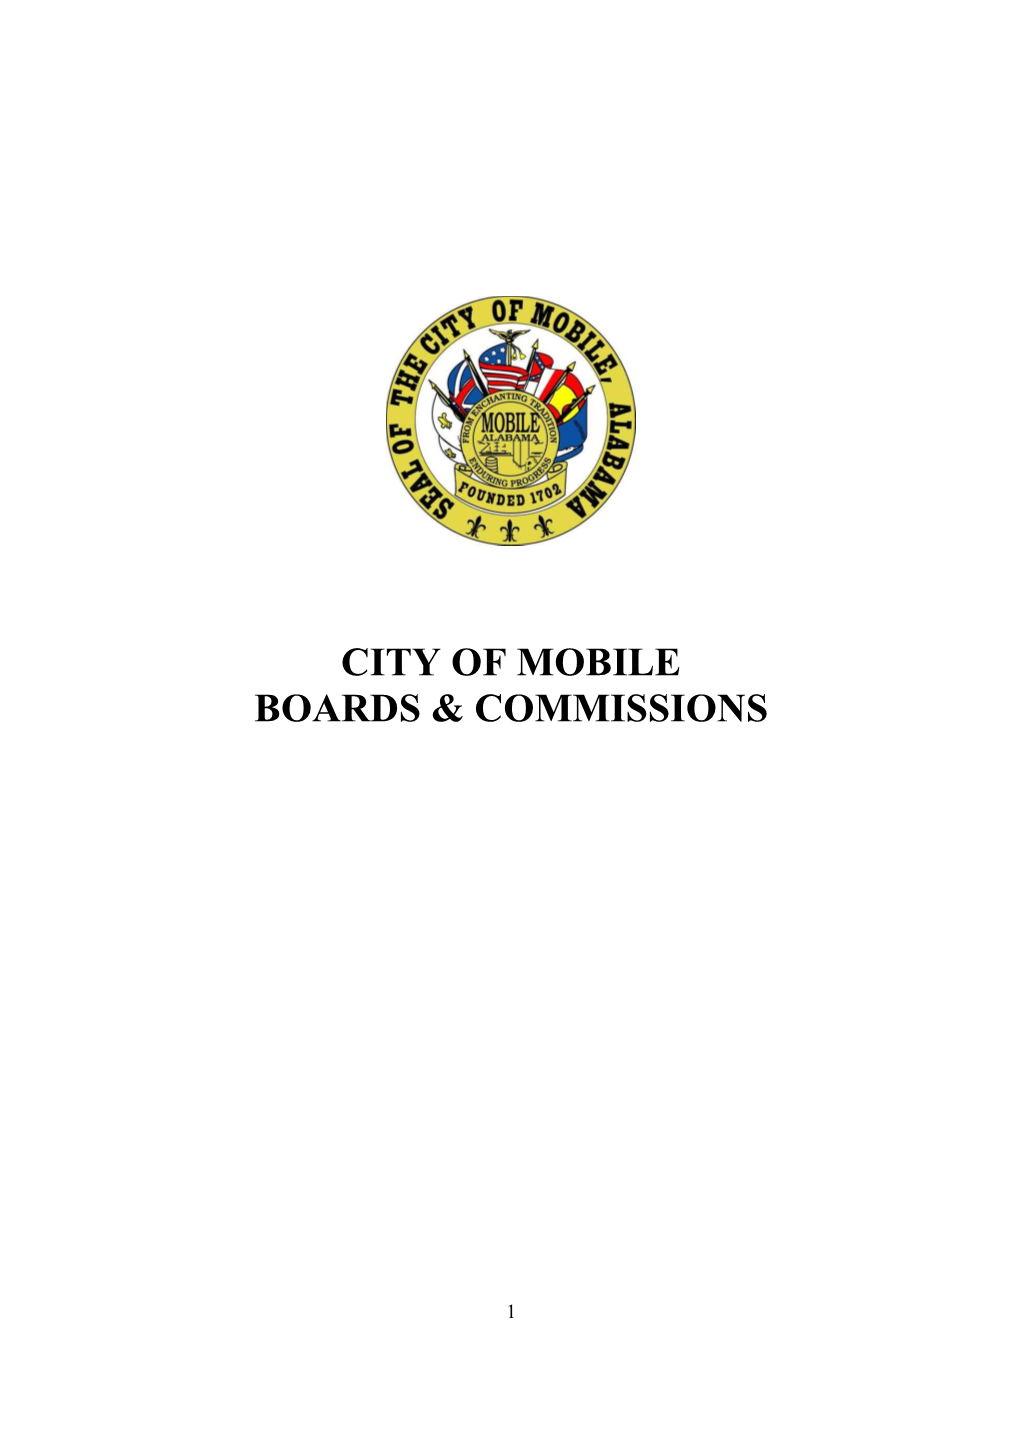 Descriptions of City Boards